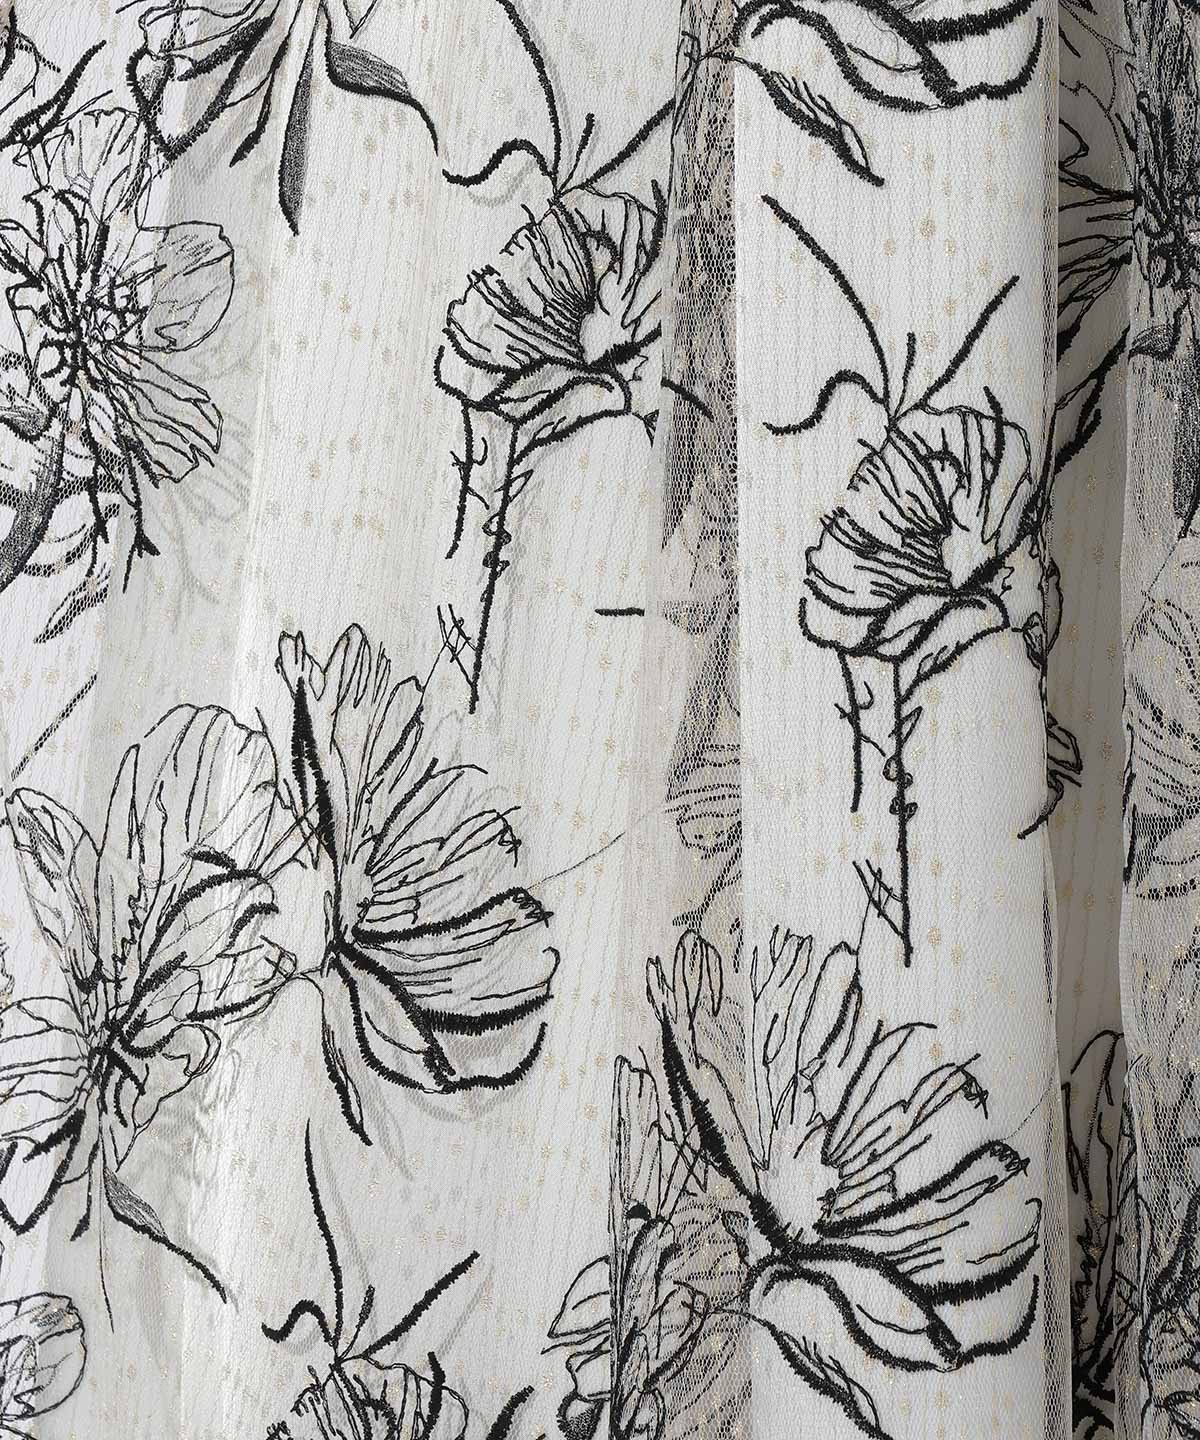 ラメチュール花刺繍ロングスカート